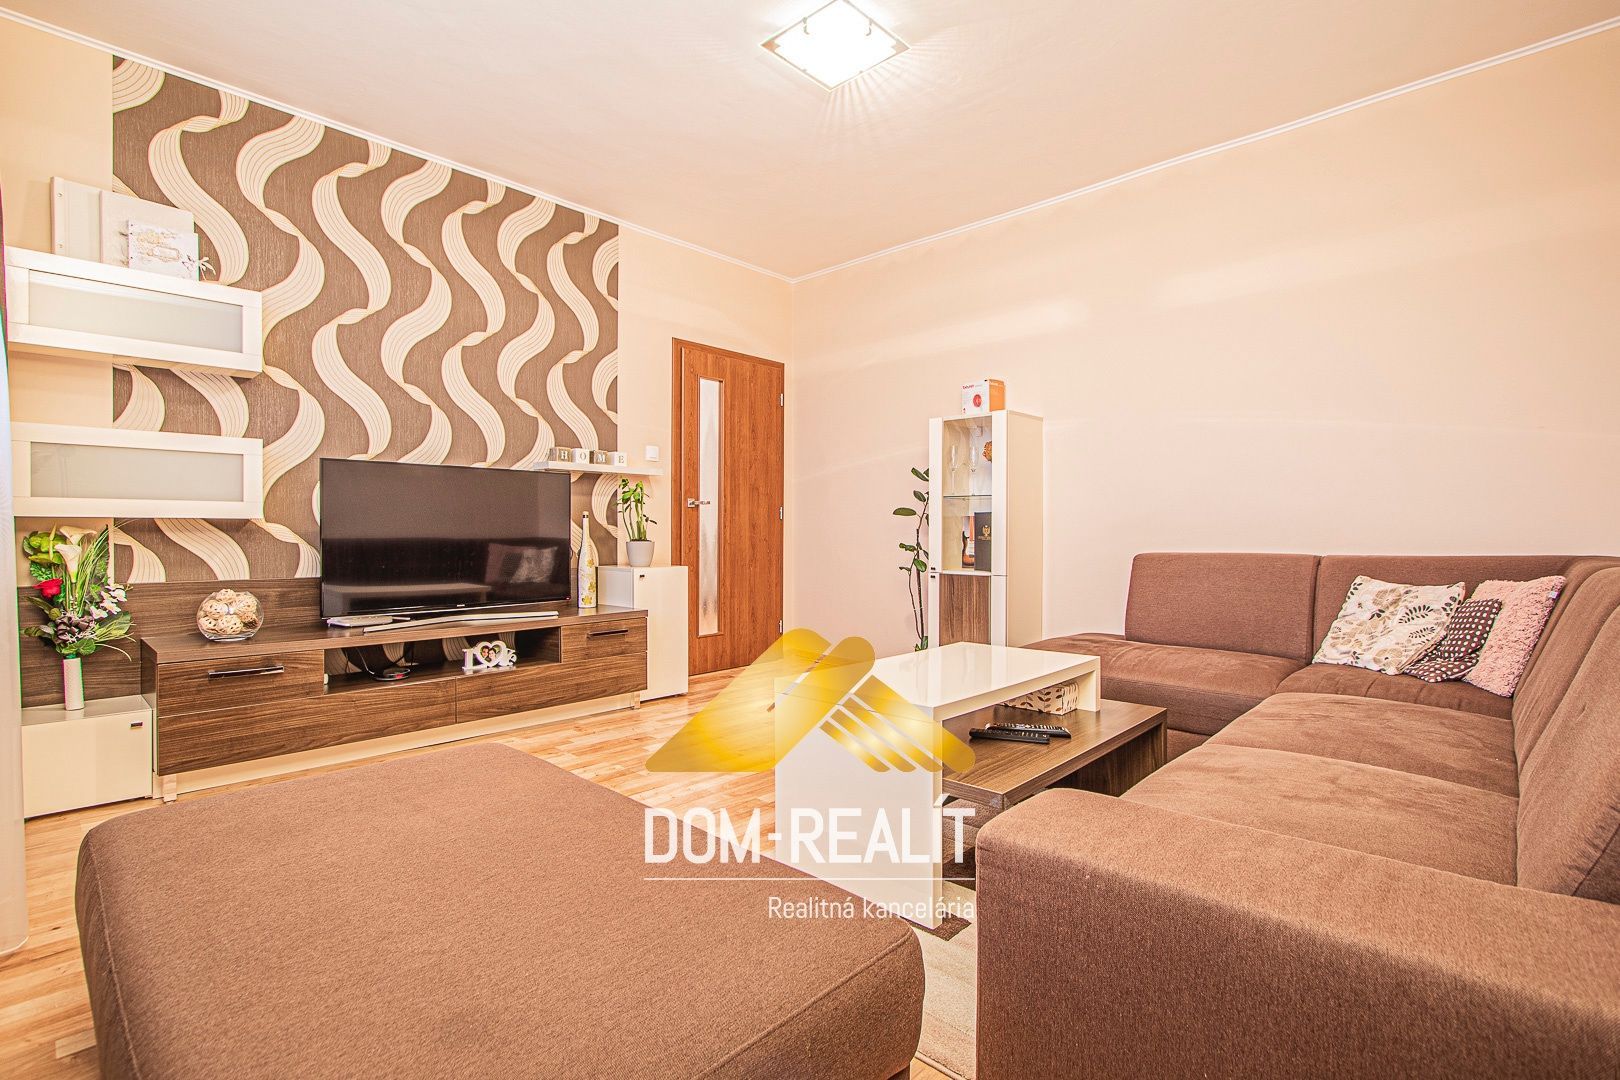 Nehnutelnost DOM-REALÍT ponúka kompletne zrekonštruovaný 3izb byt na Budatínskej ul. v Petržalke